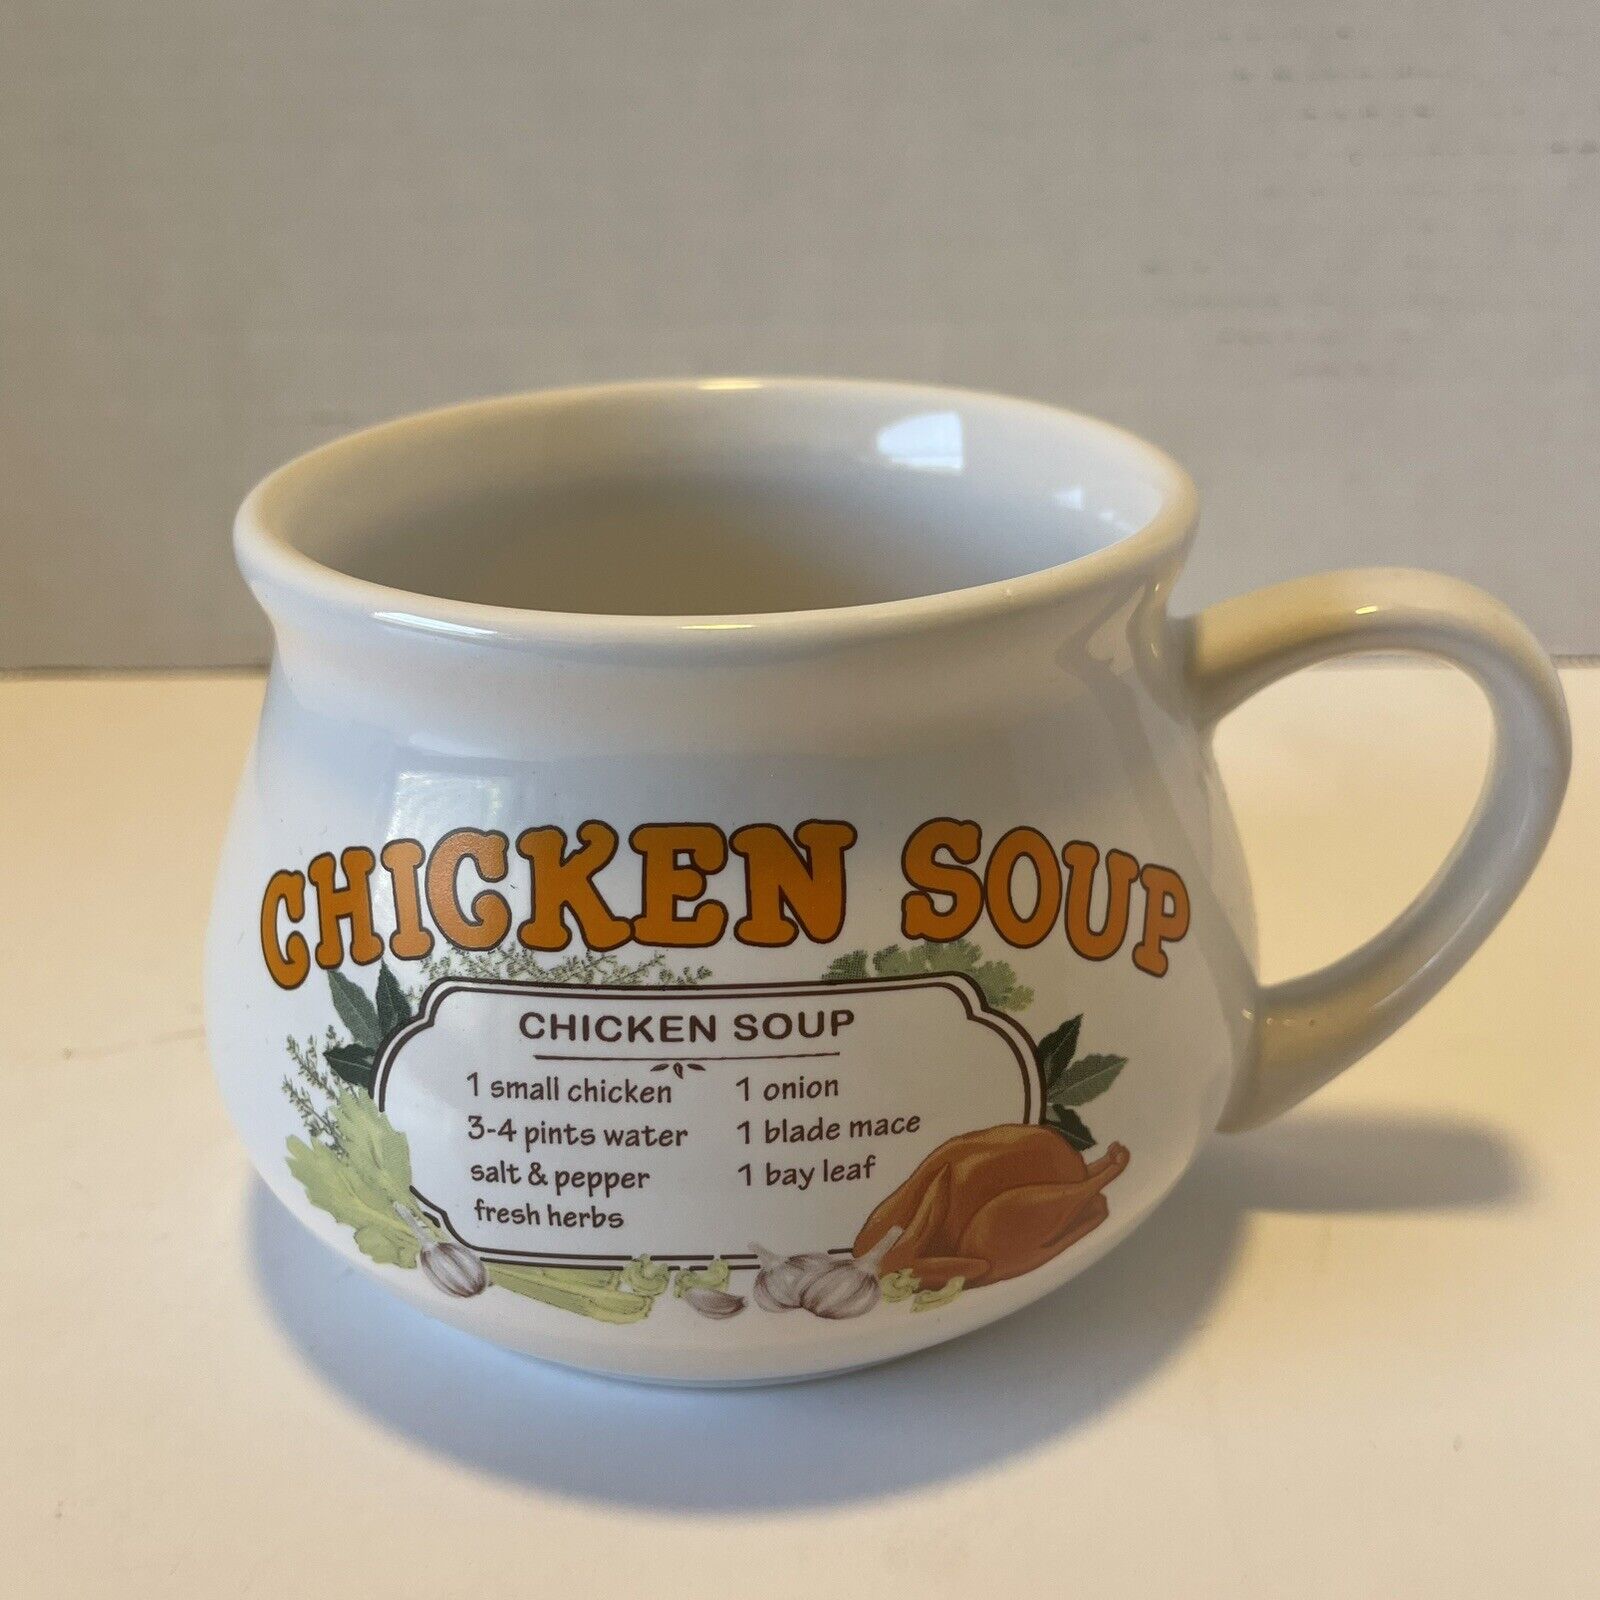 Dat'l Do-It Inc Chicken Soup Bowl Vintage